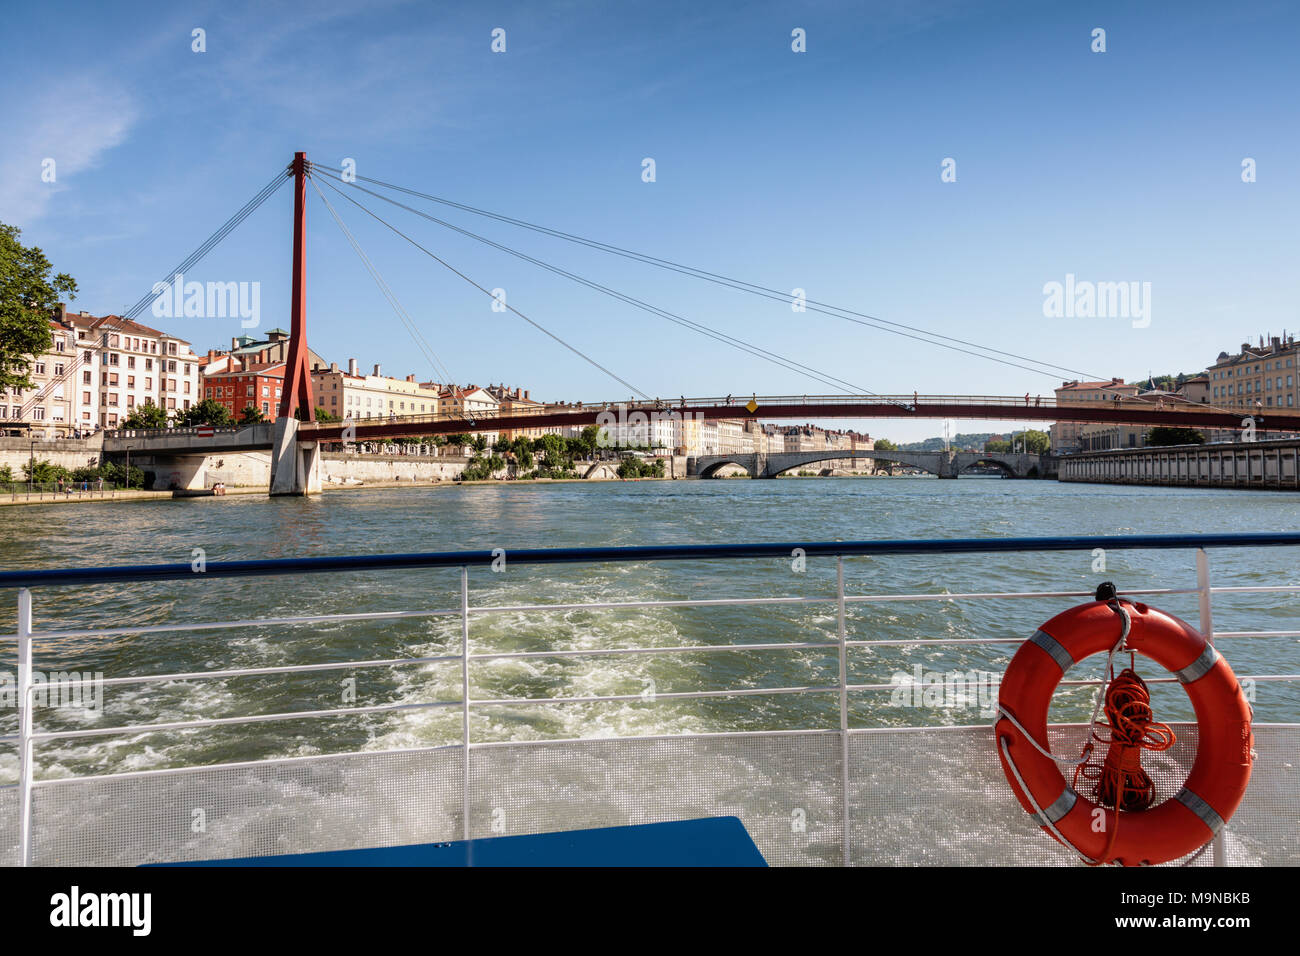 El Palacio de Justicia pasarela sobre el río Saône tomada desde la parte trasera de un crucero de placer en barco, Lyon, Francia. Foto de stock